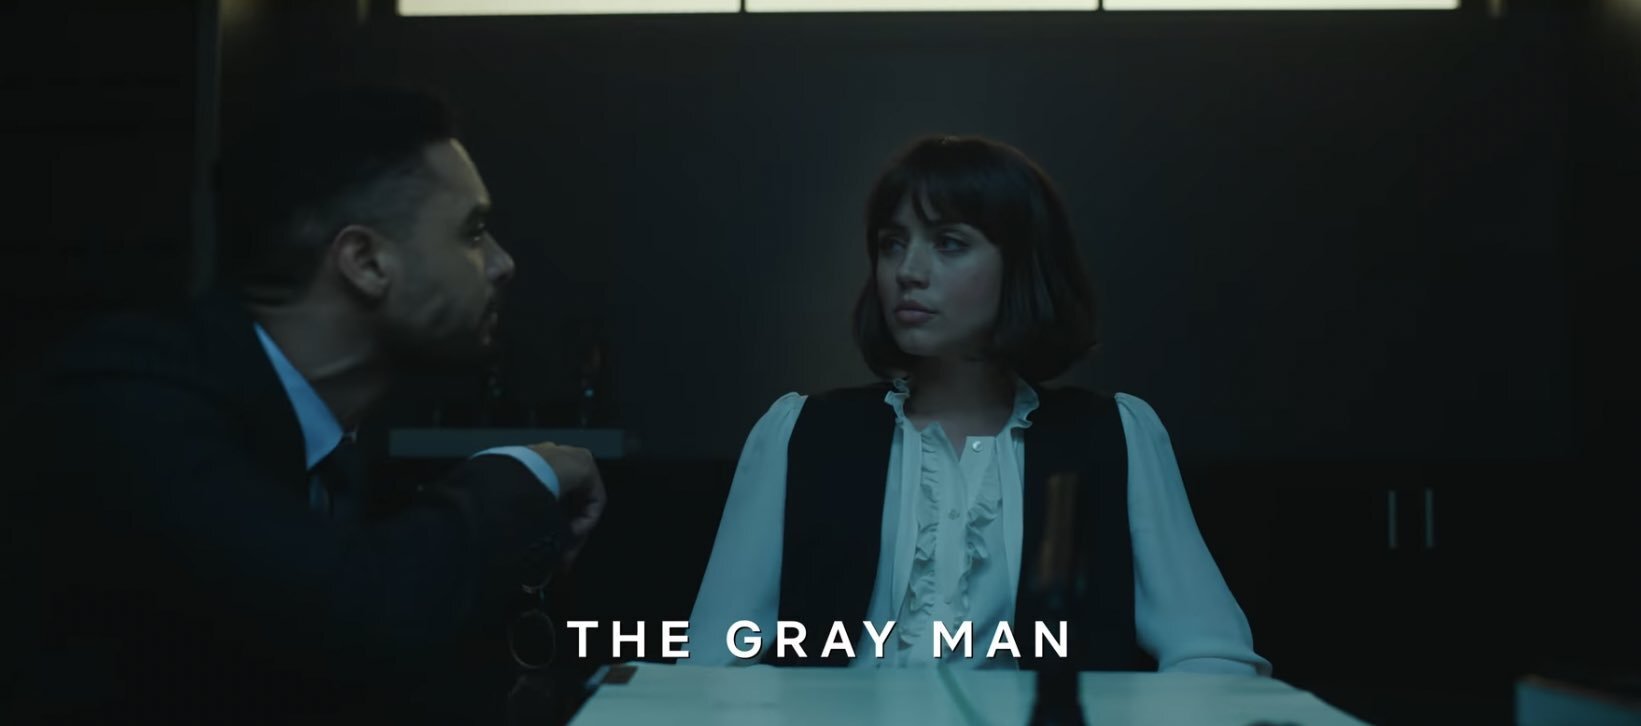 Pięć widowiskowych filmów akcji jak Gray Man Netflixa [LISTA